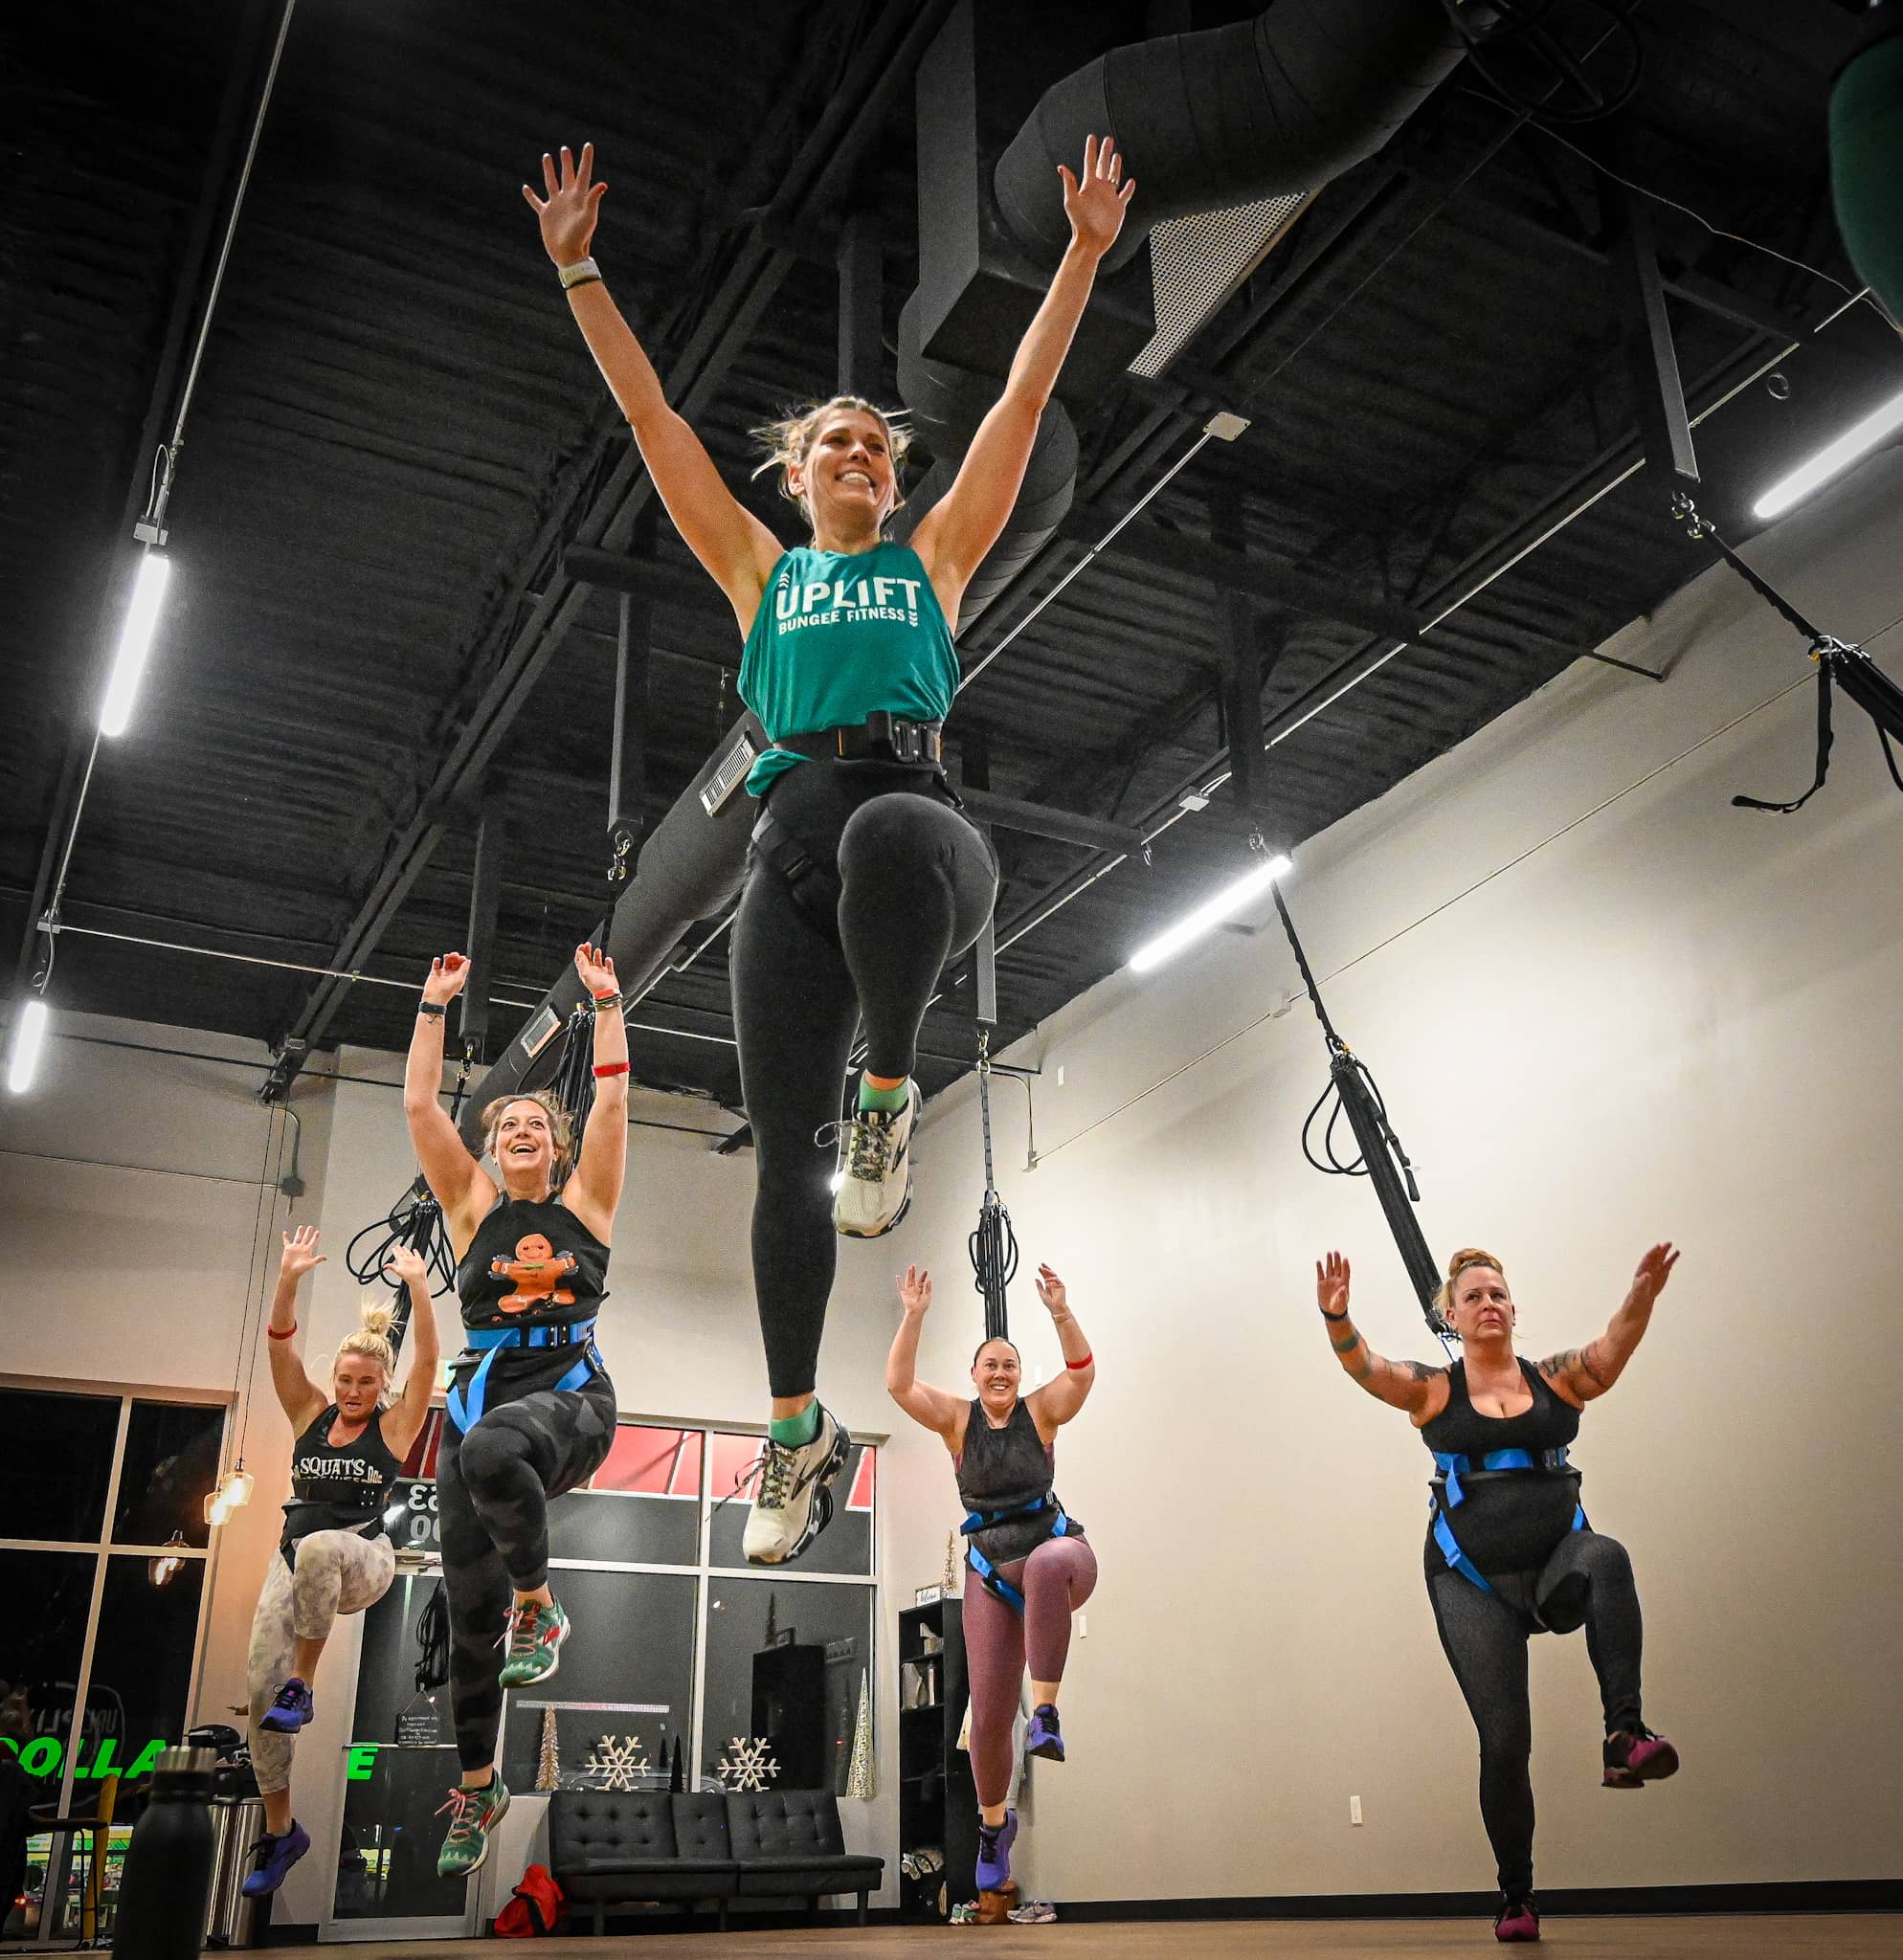 Region's first bungee fitness studio opens in Fayetteville - Talk